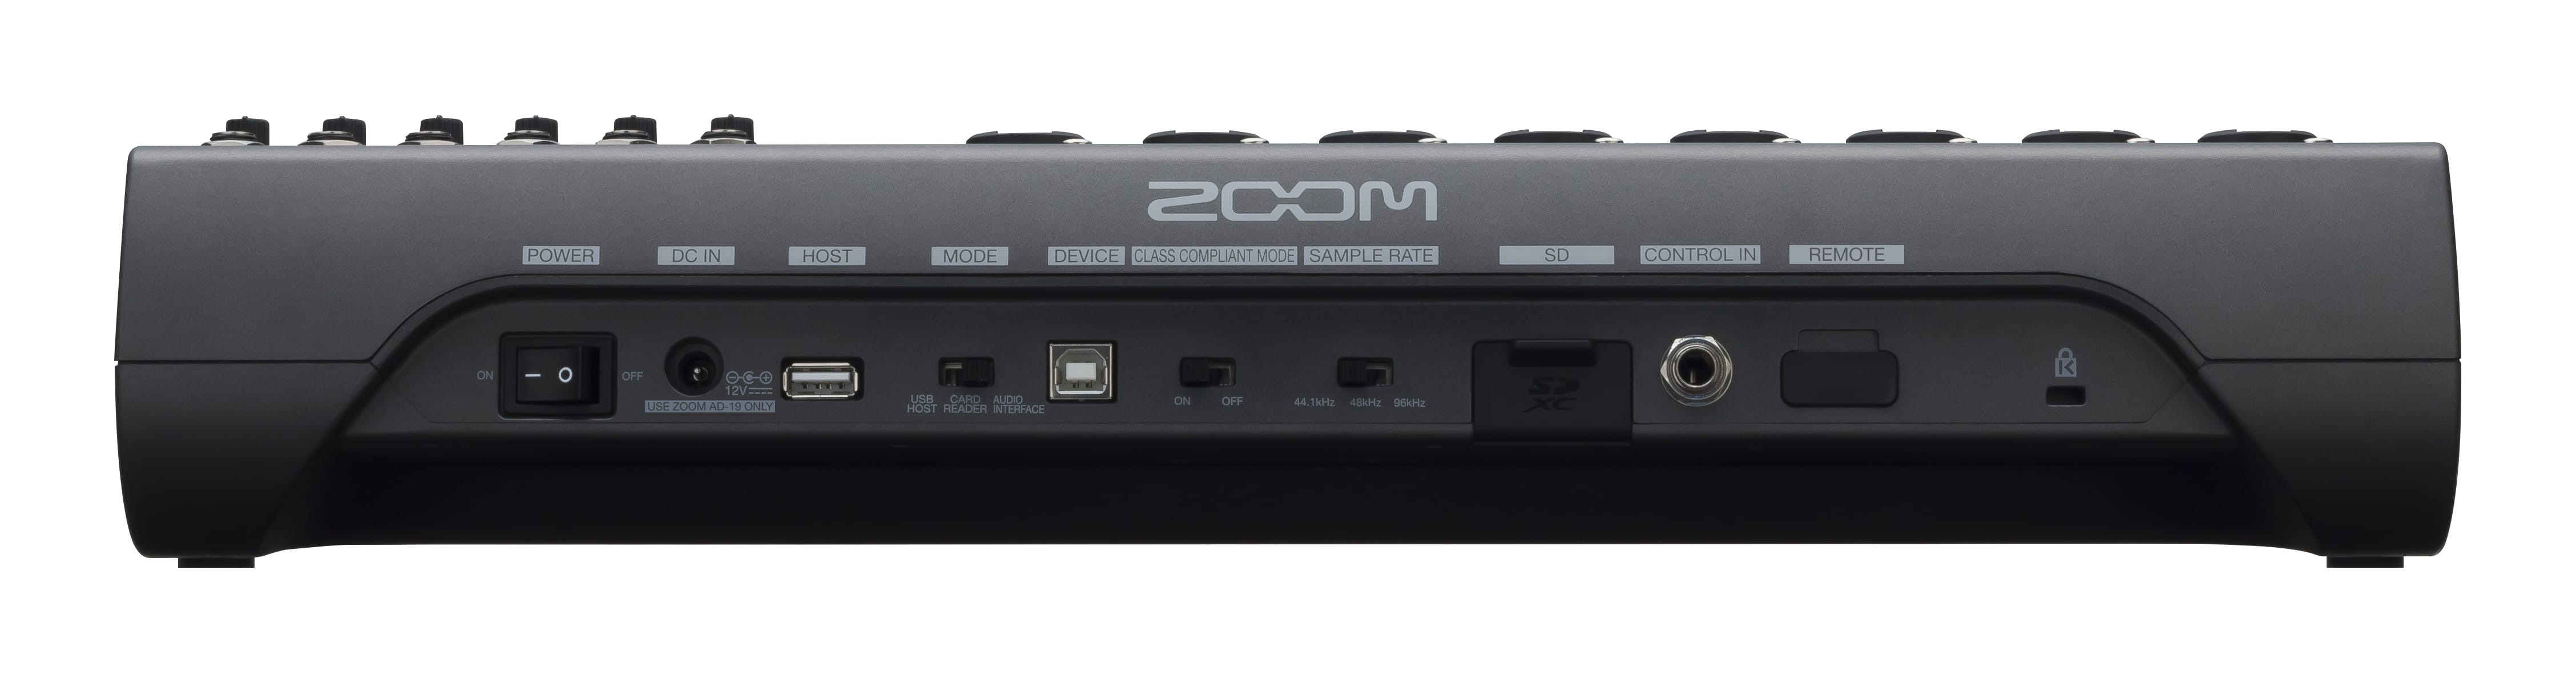 Zoom LiveTrack-20  More Than A Digital Mixer